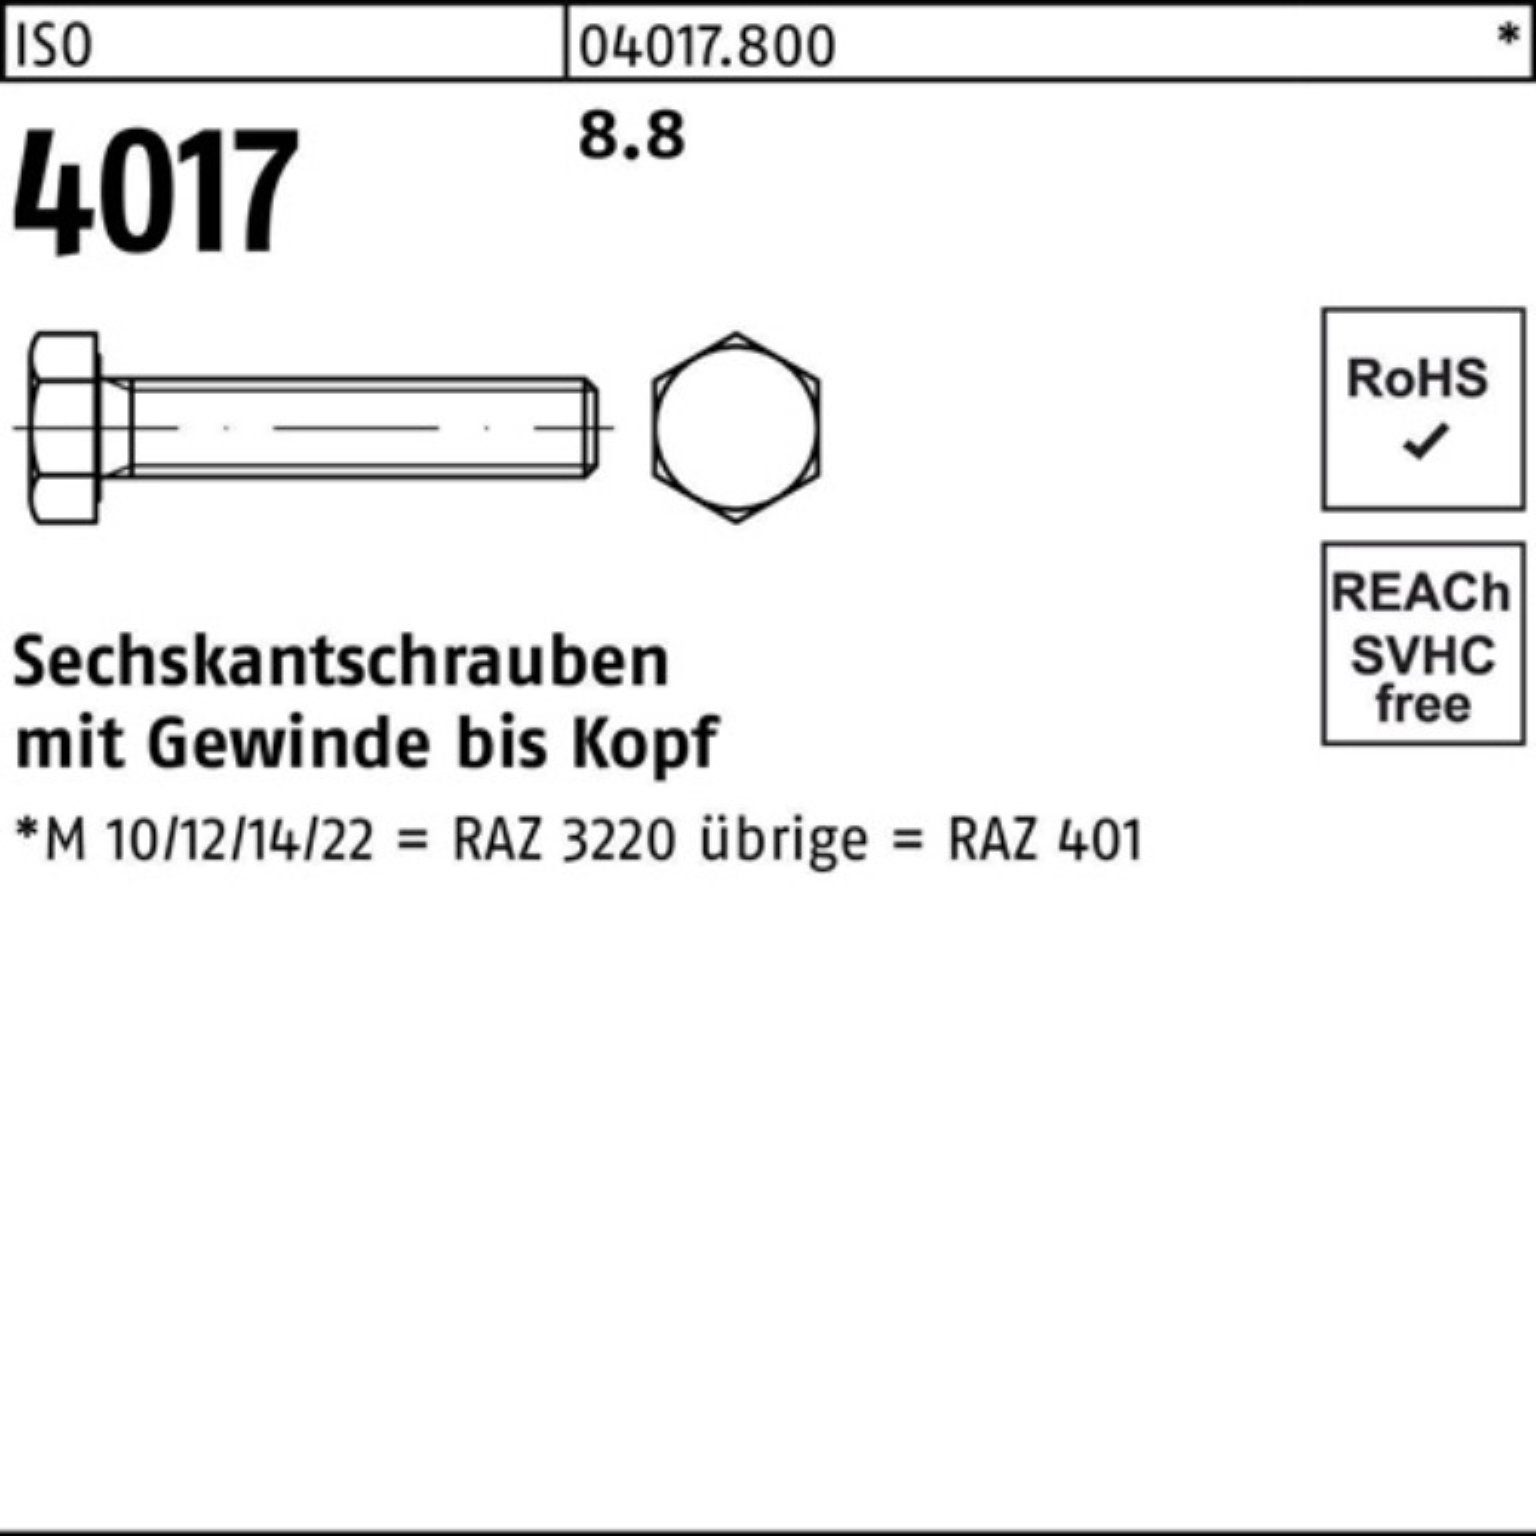 Bufab Sechskantschraube 100er VG 8.8 ISO M8x Stück Pack Sechskantschraube 4017 100 ISO 40 200